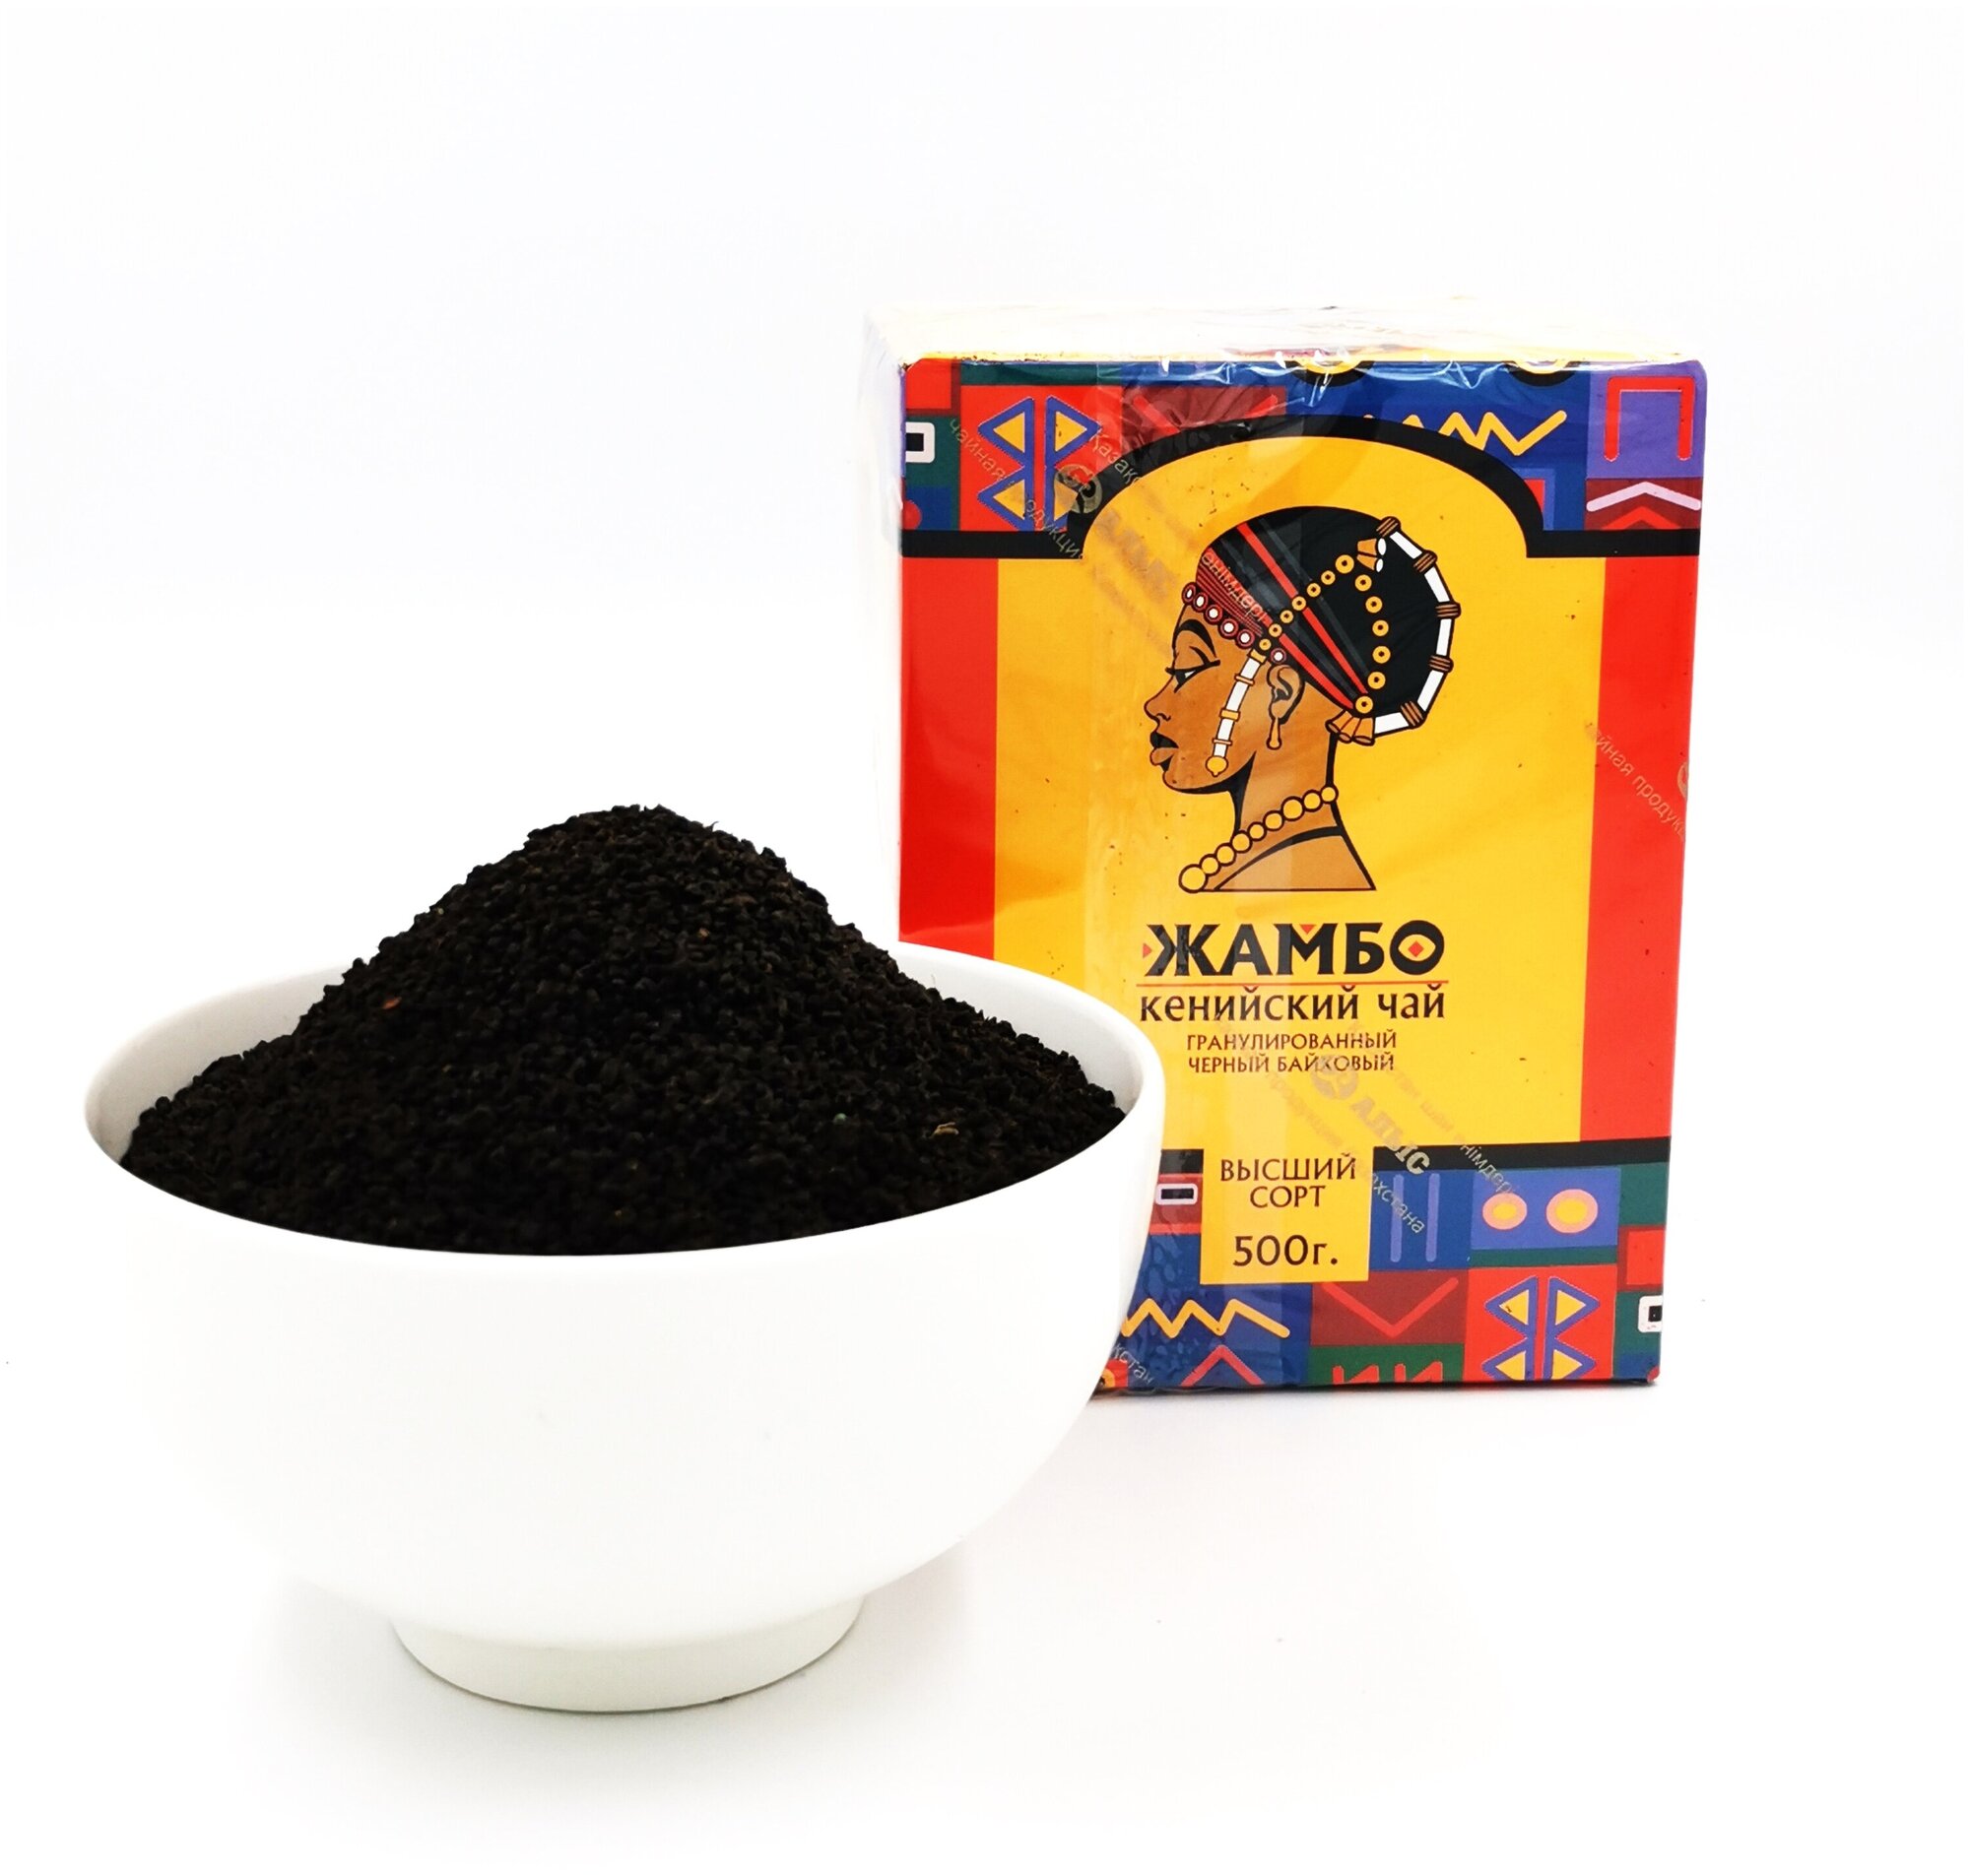 Жамбо / Чай черный рассыпной гранулированный кенийский высший сорт жамбо 500гр. - фотография № 4